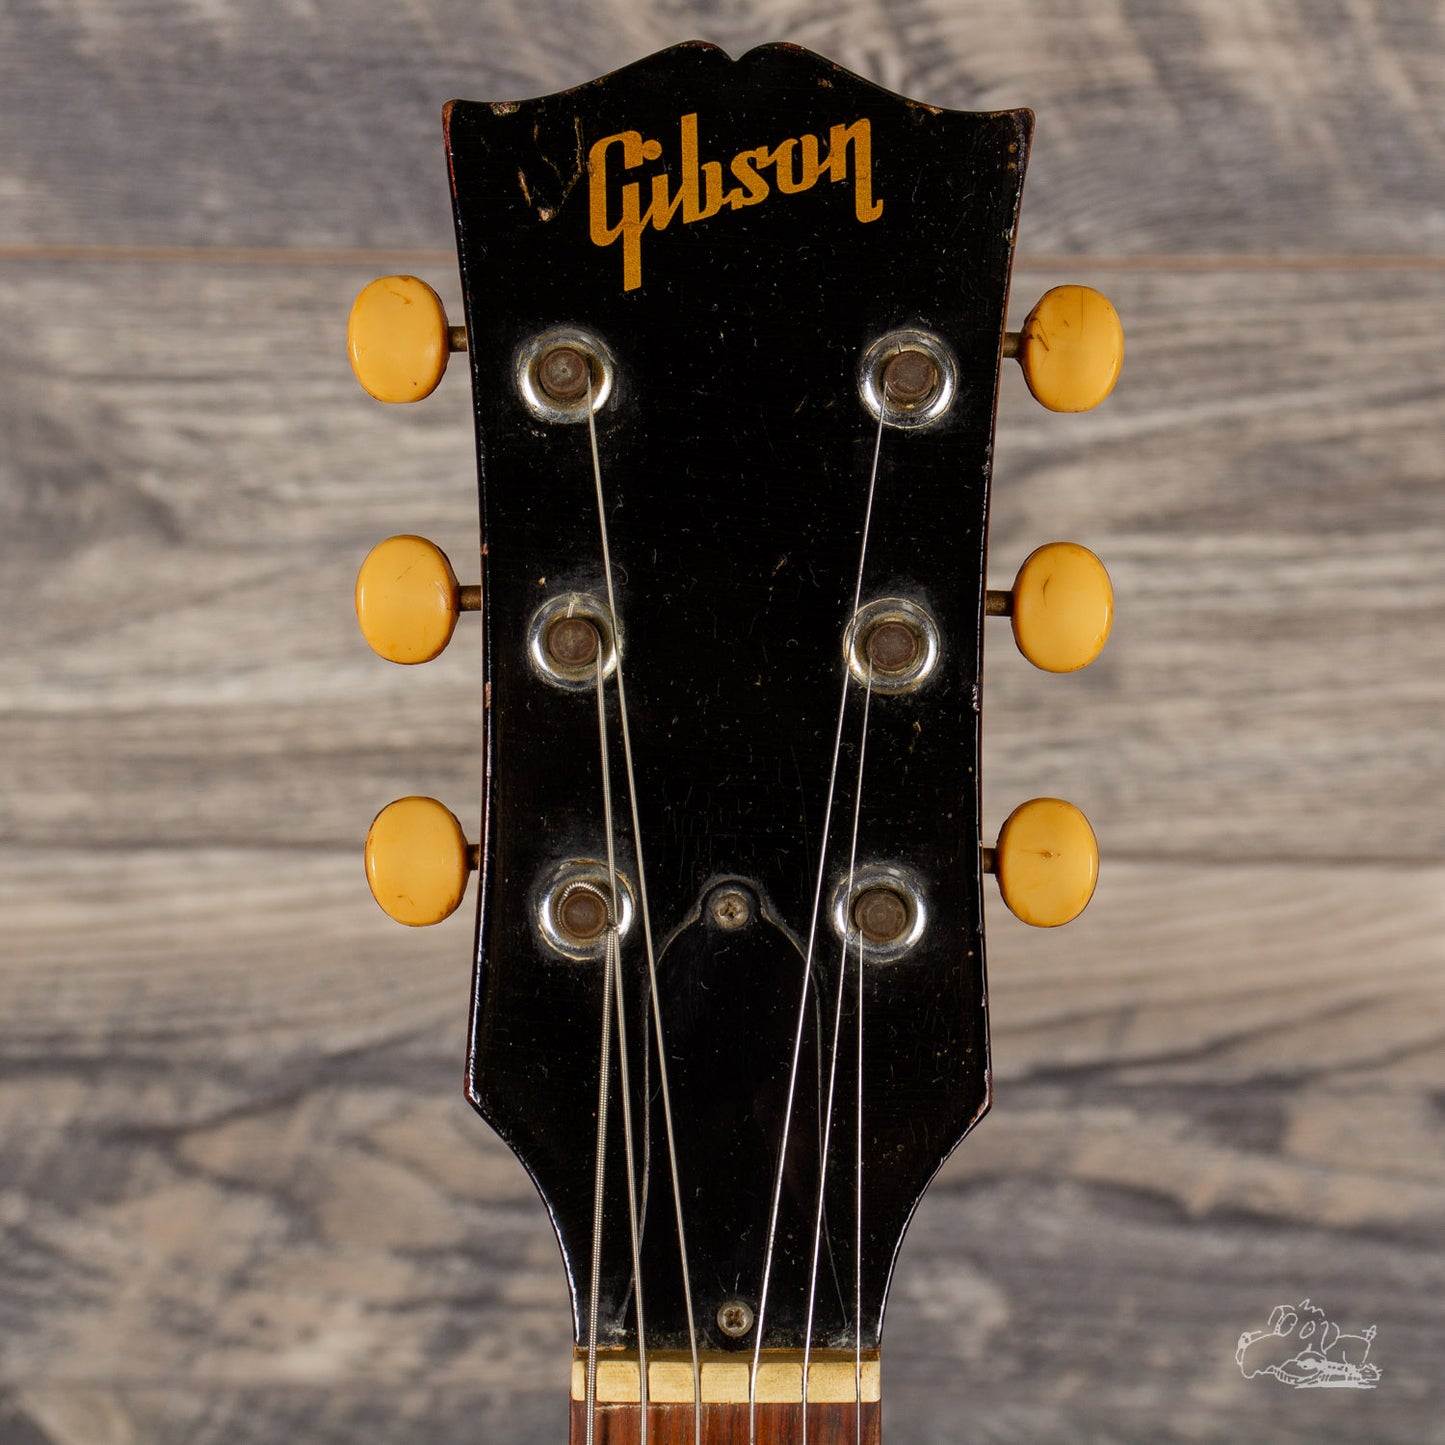 1966 Gibson ES-125TDC - Cherry Sunburst